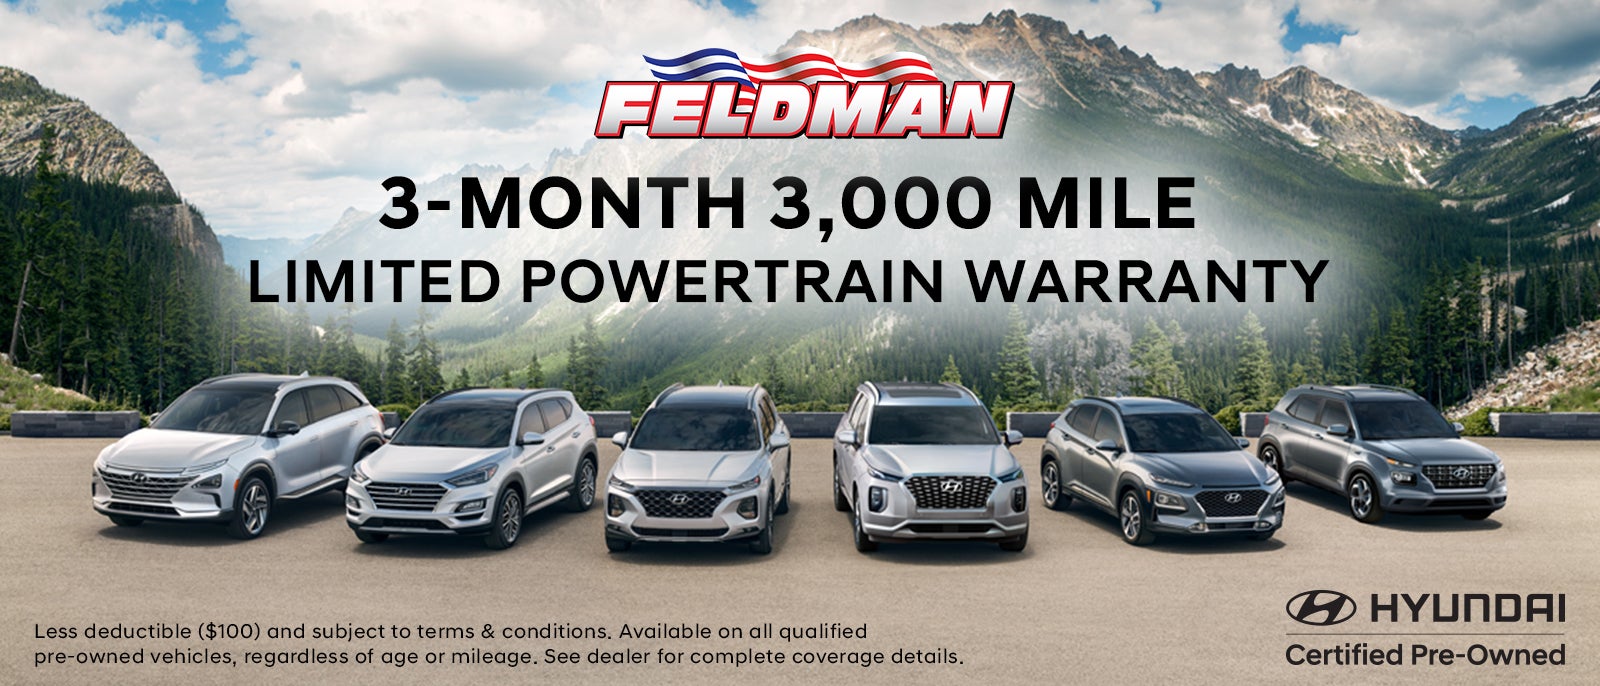 Limited Powertrain Warranty at Feldman